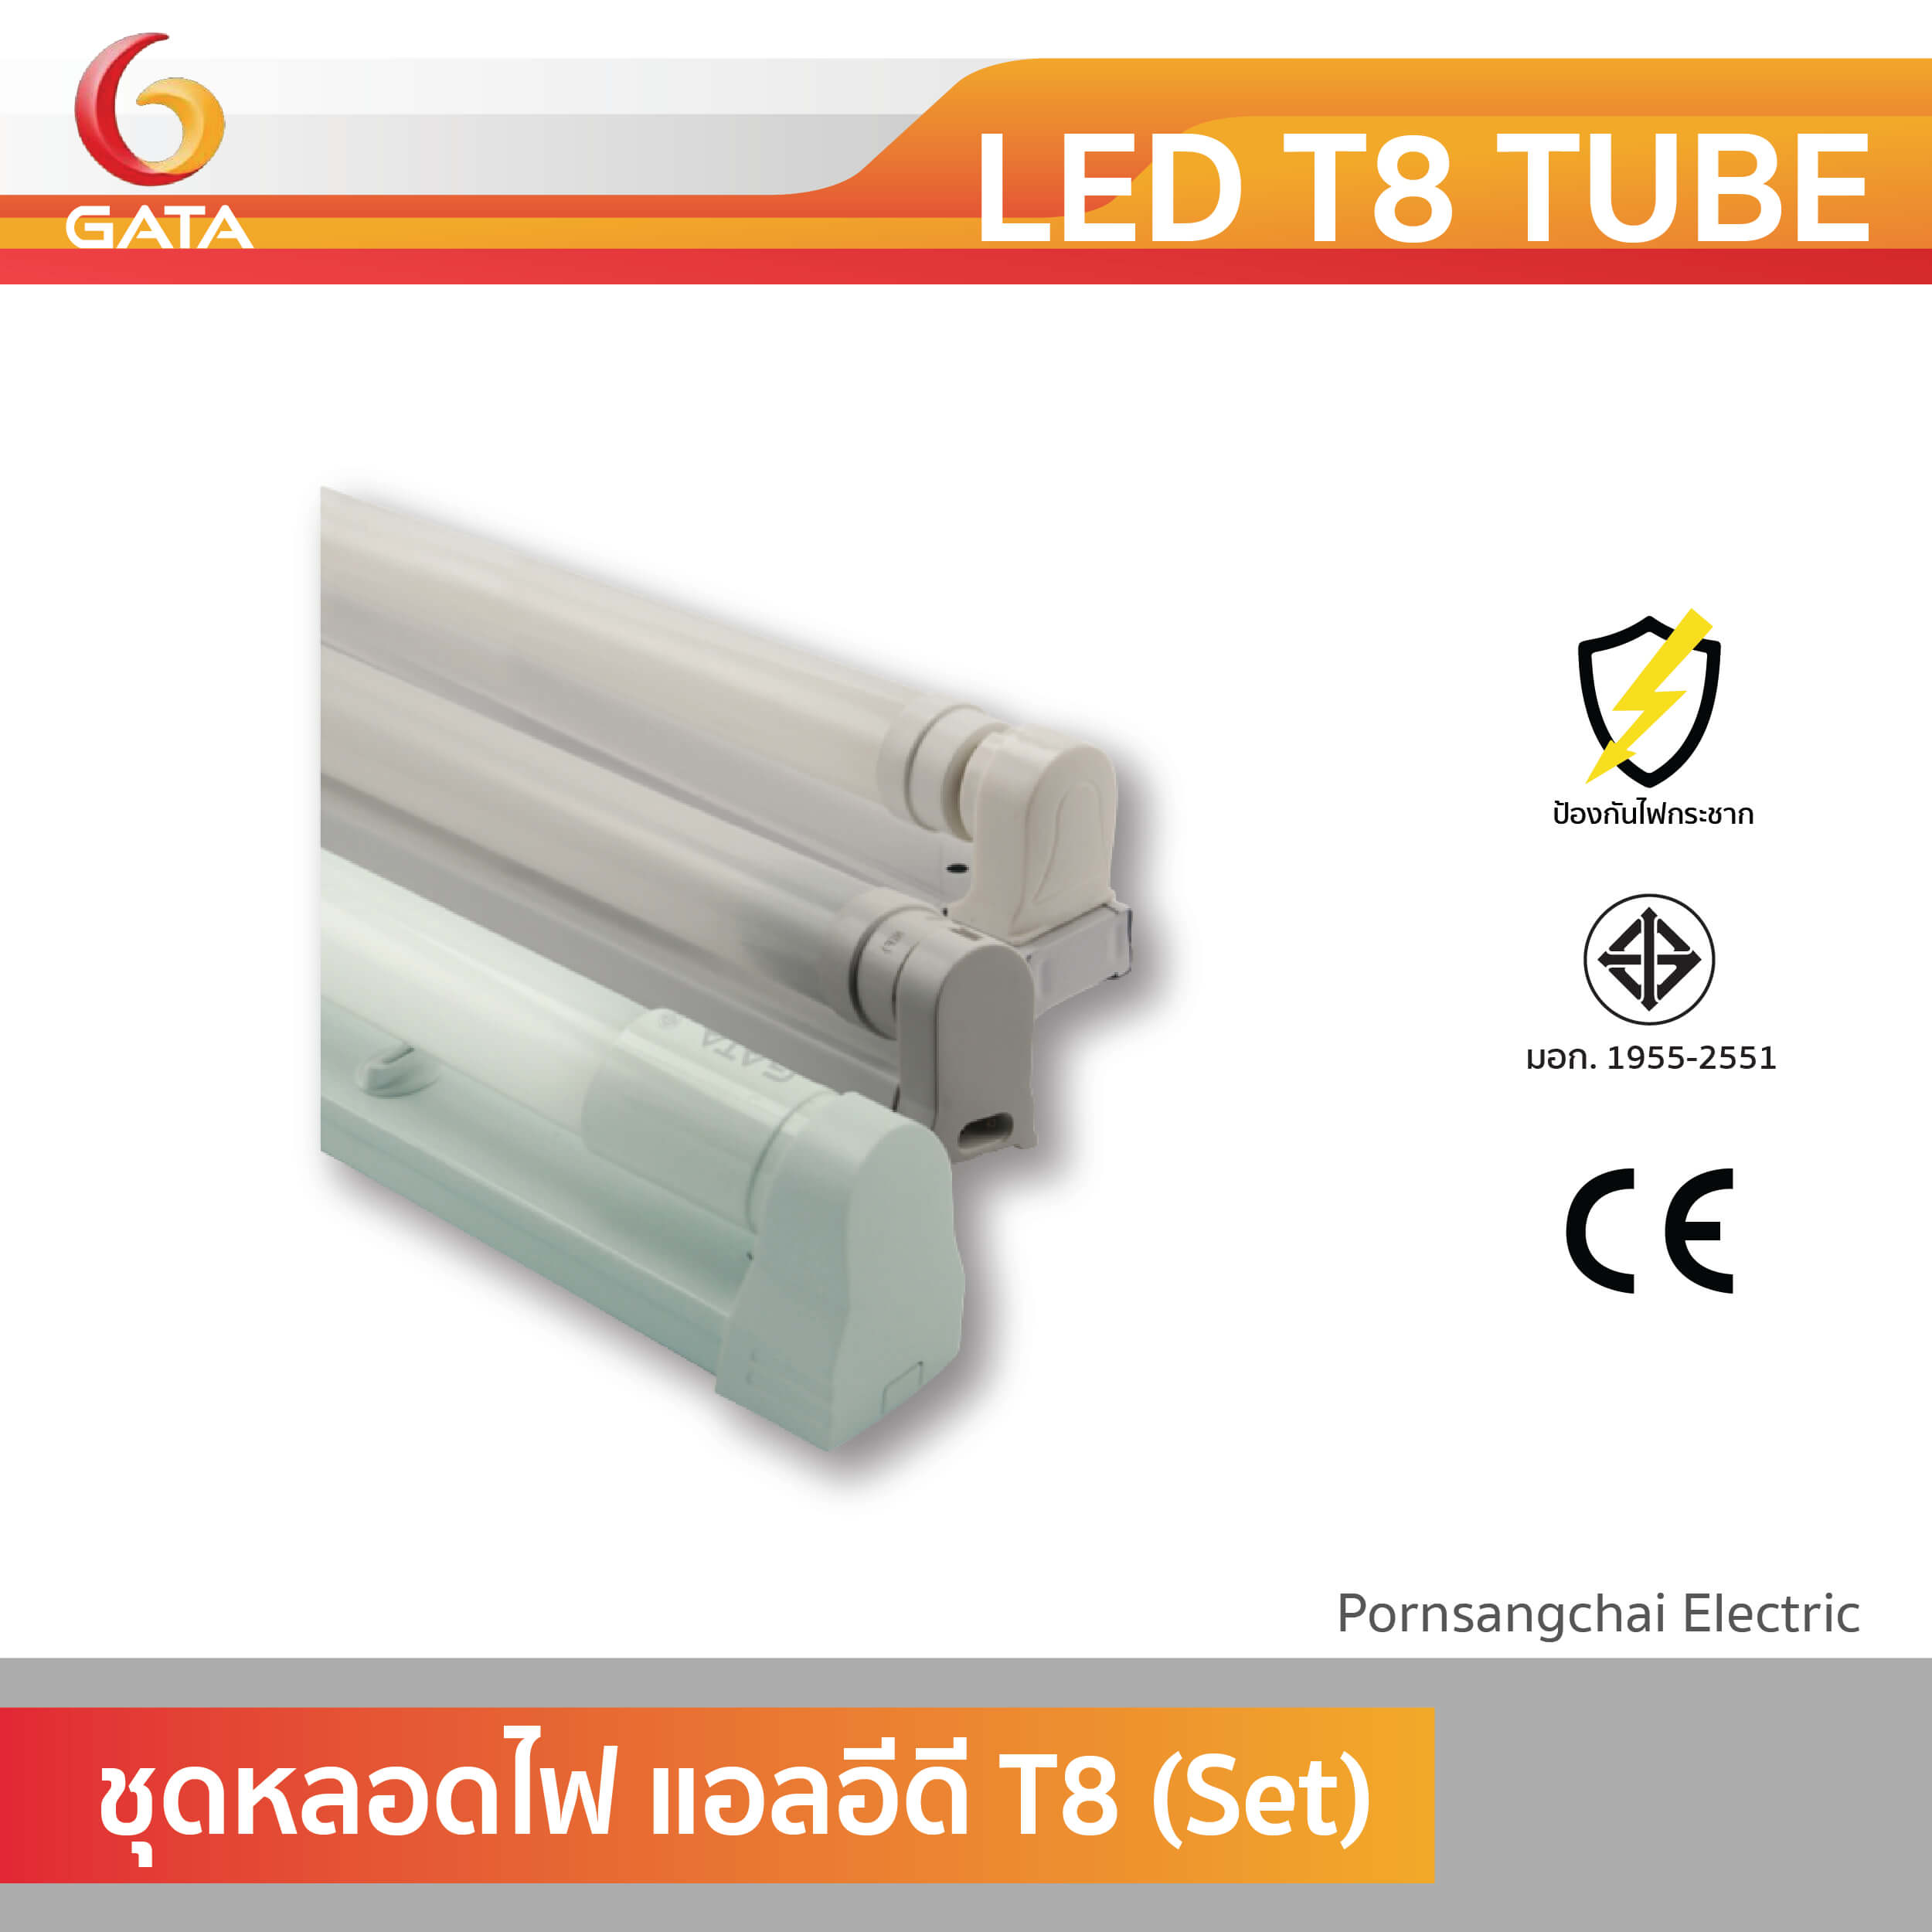 GATA หลอดไฟ LED T8 TUBE (Set)